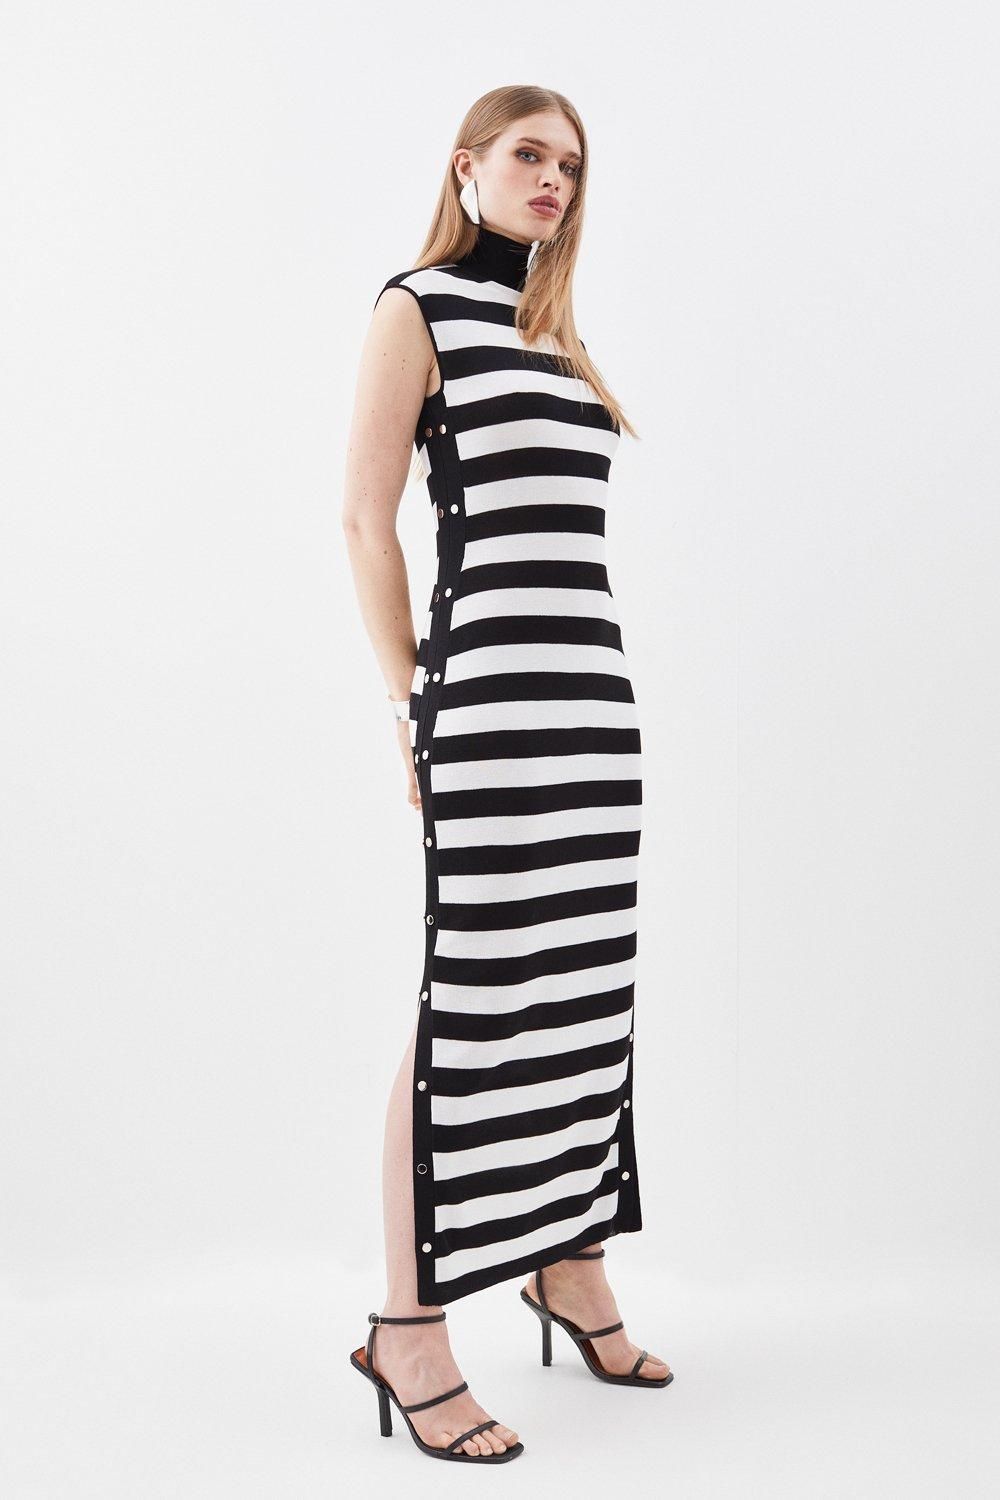 Lightweight Summer Knit Maxi Dress | Karen Millen UK + IE + DE + NL